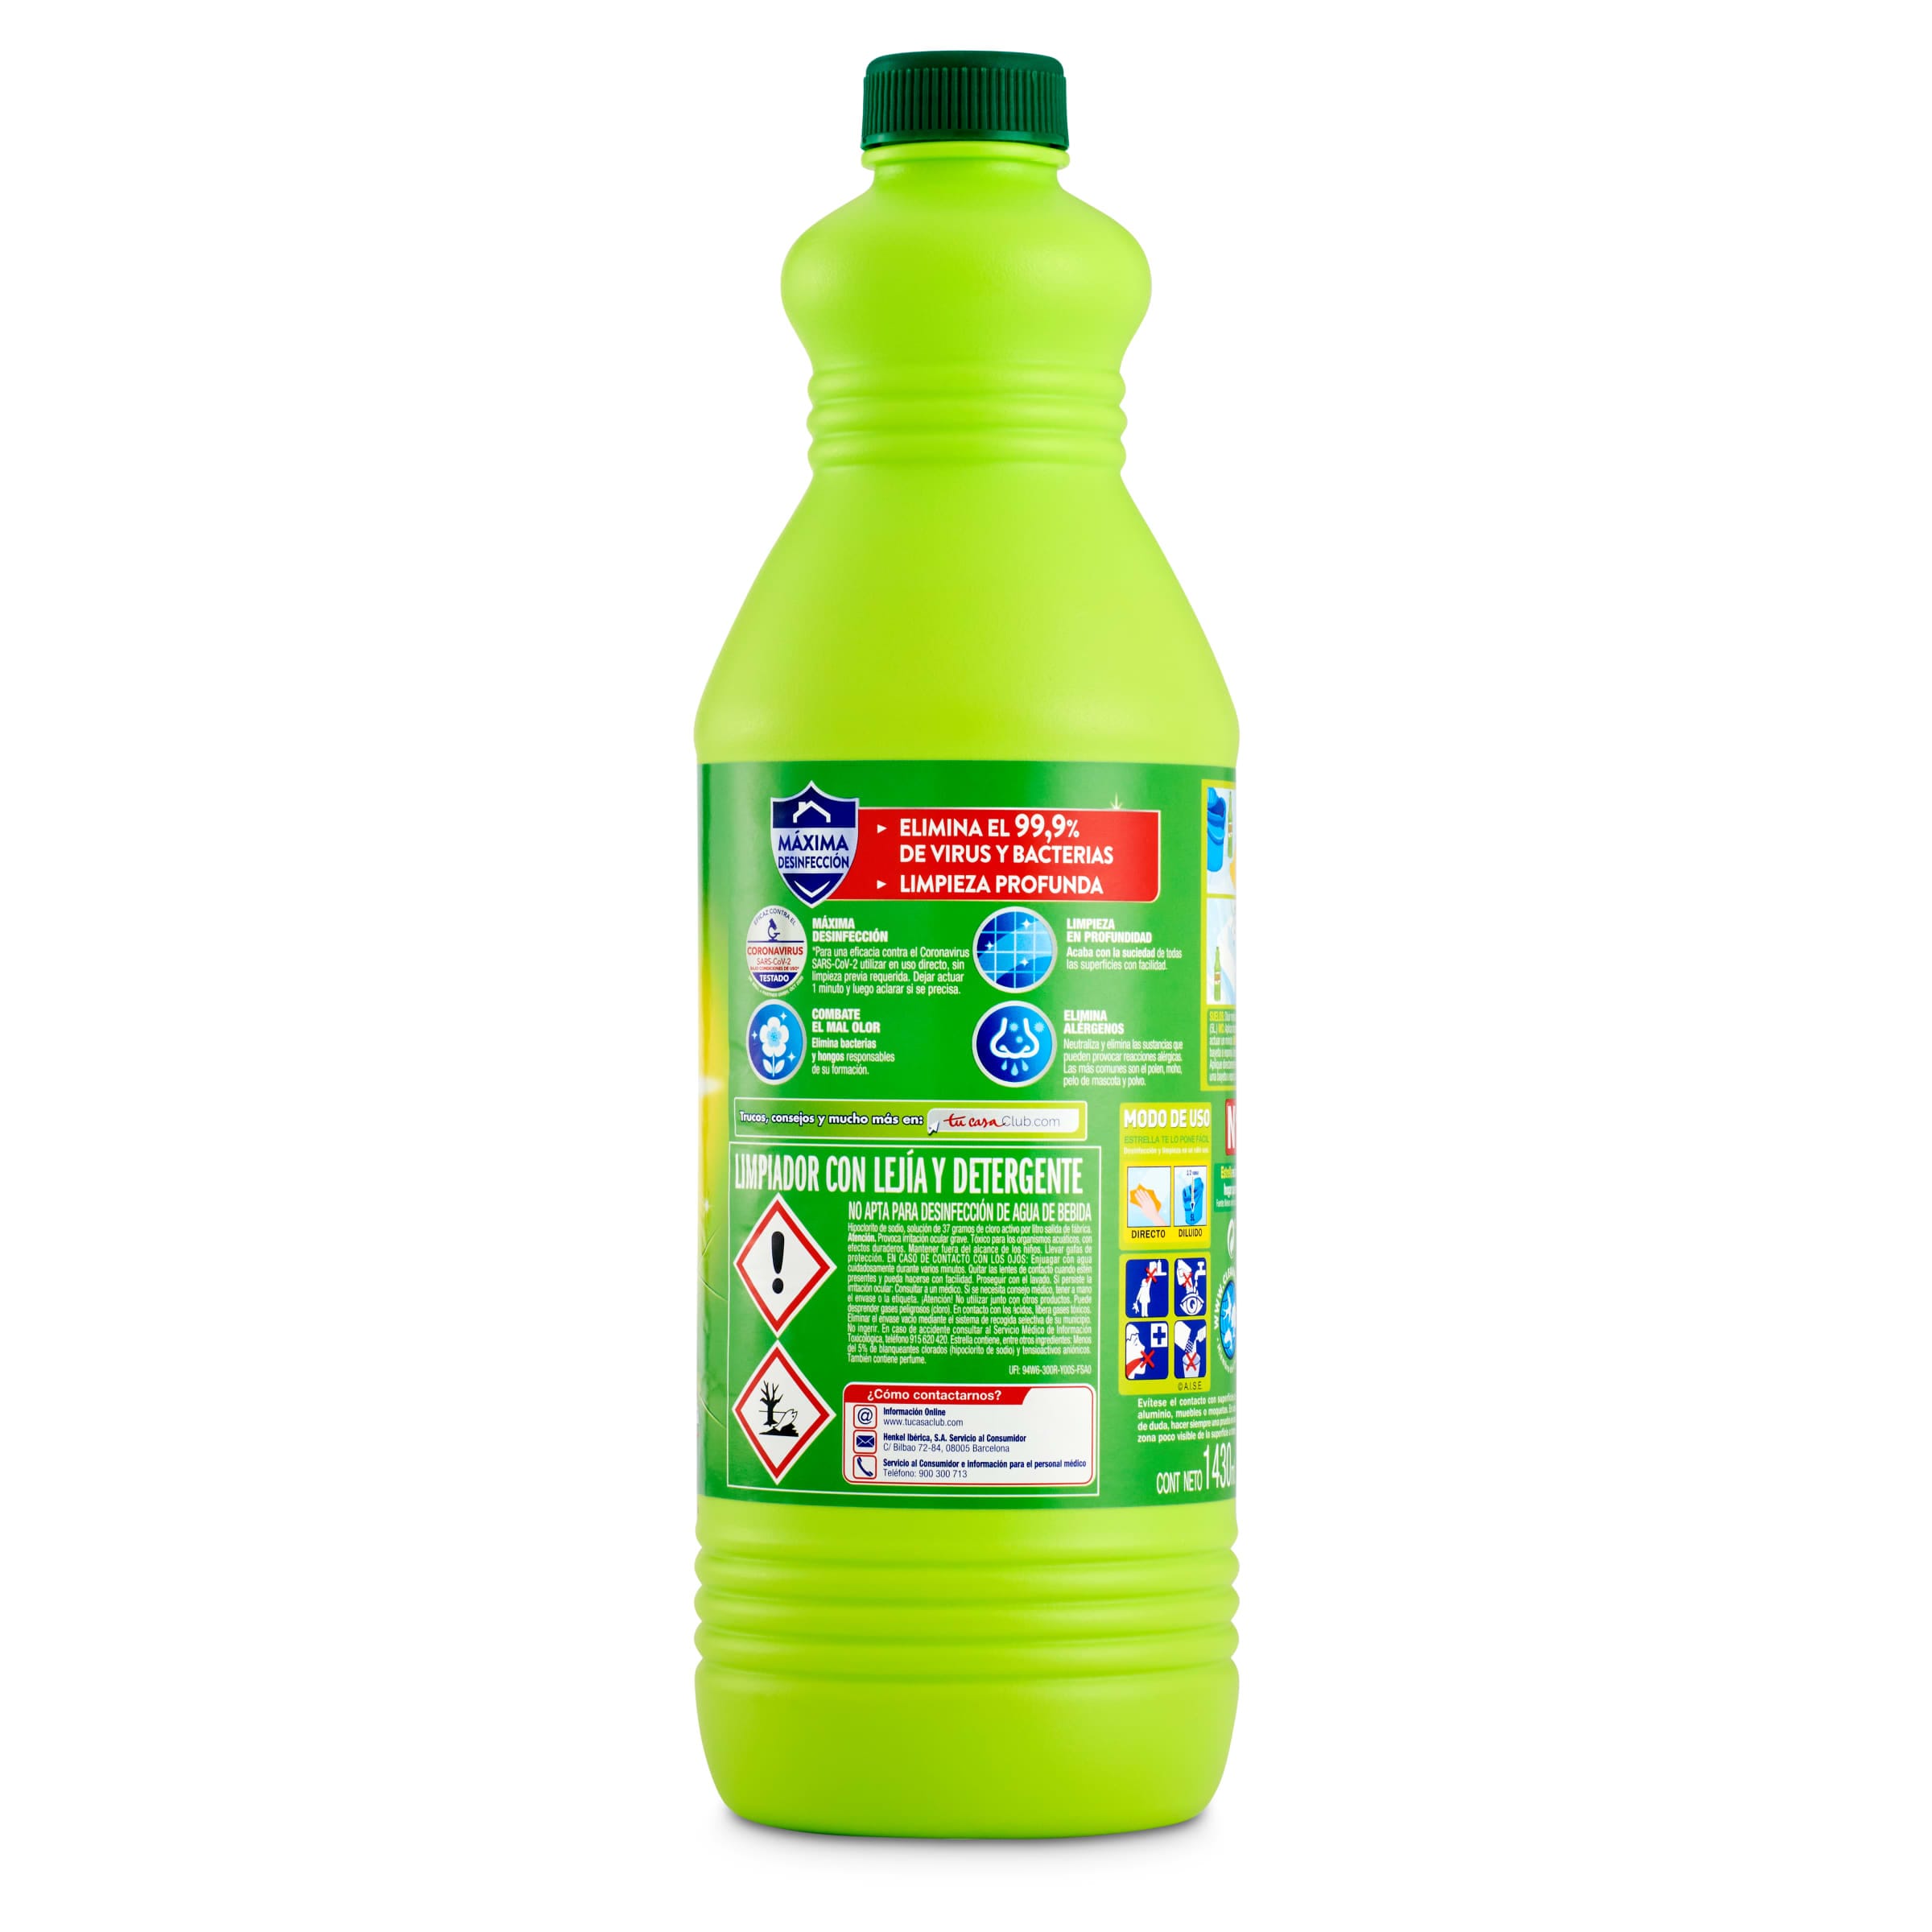 Lejía con detergente limón Estrella botella 1.43 l - Supermercados DIA